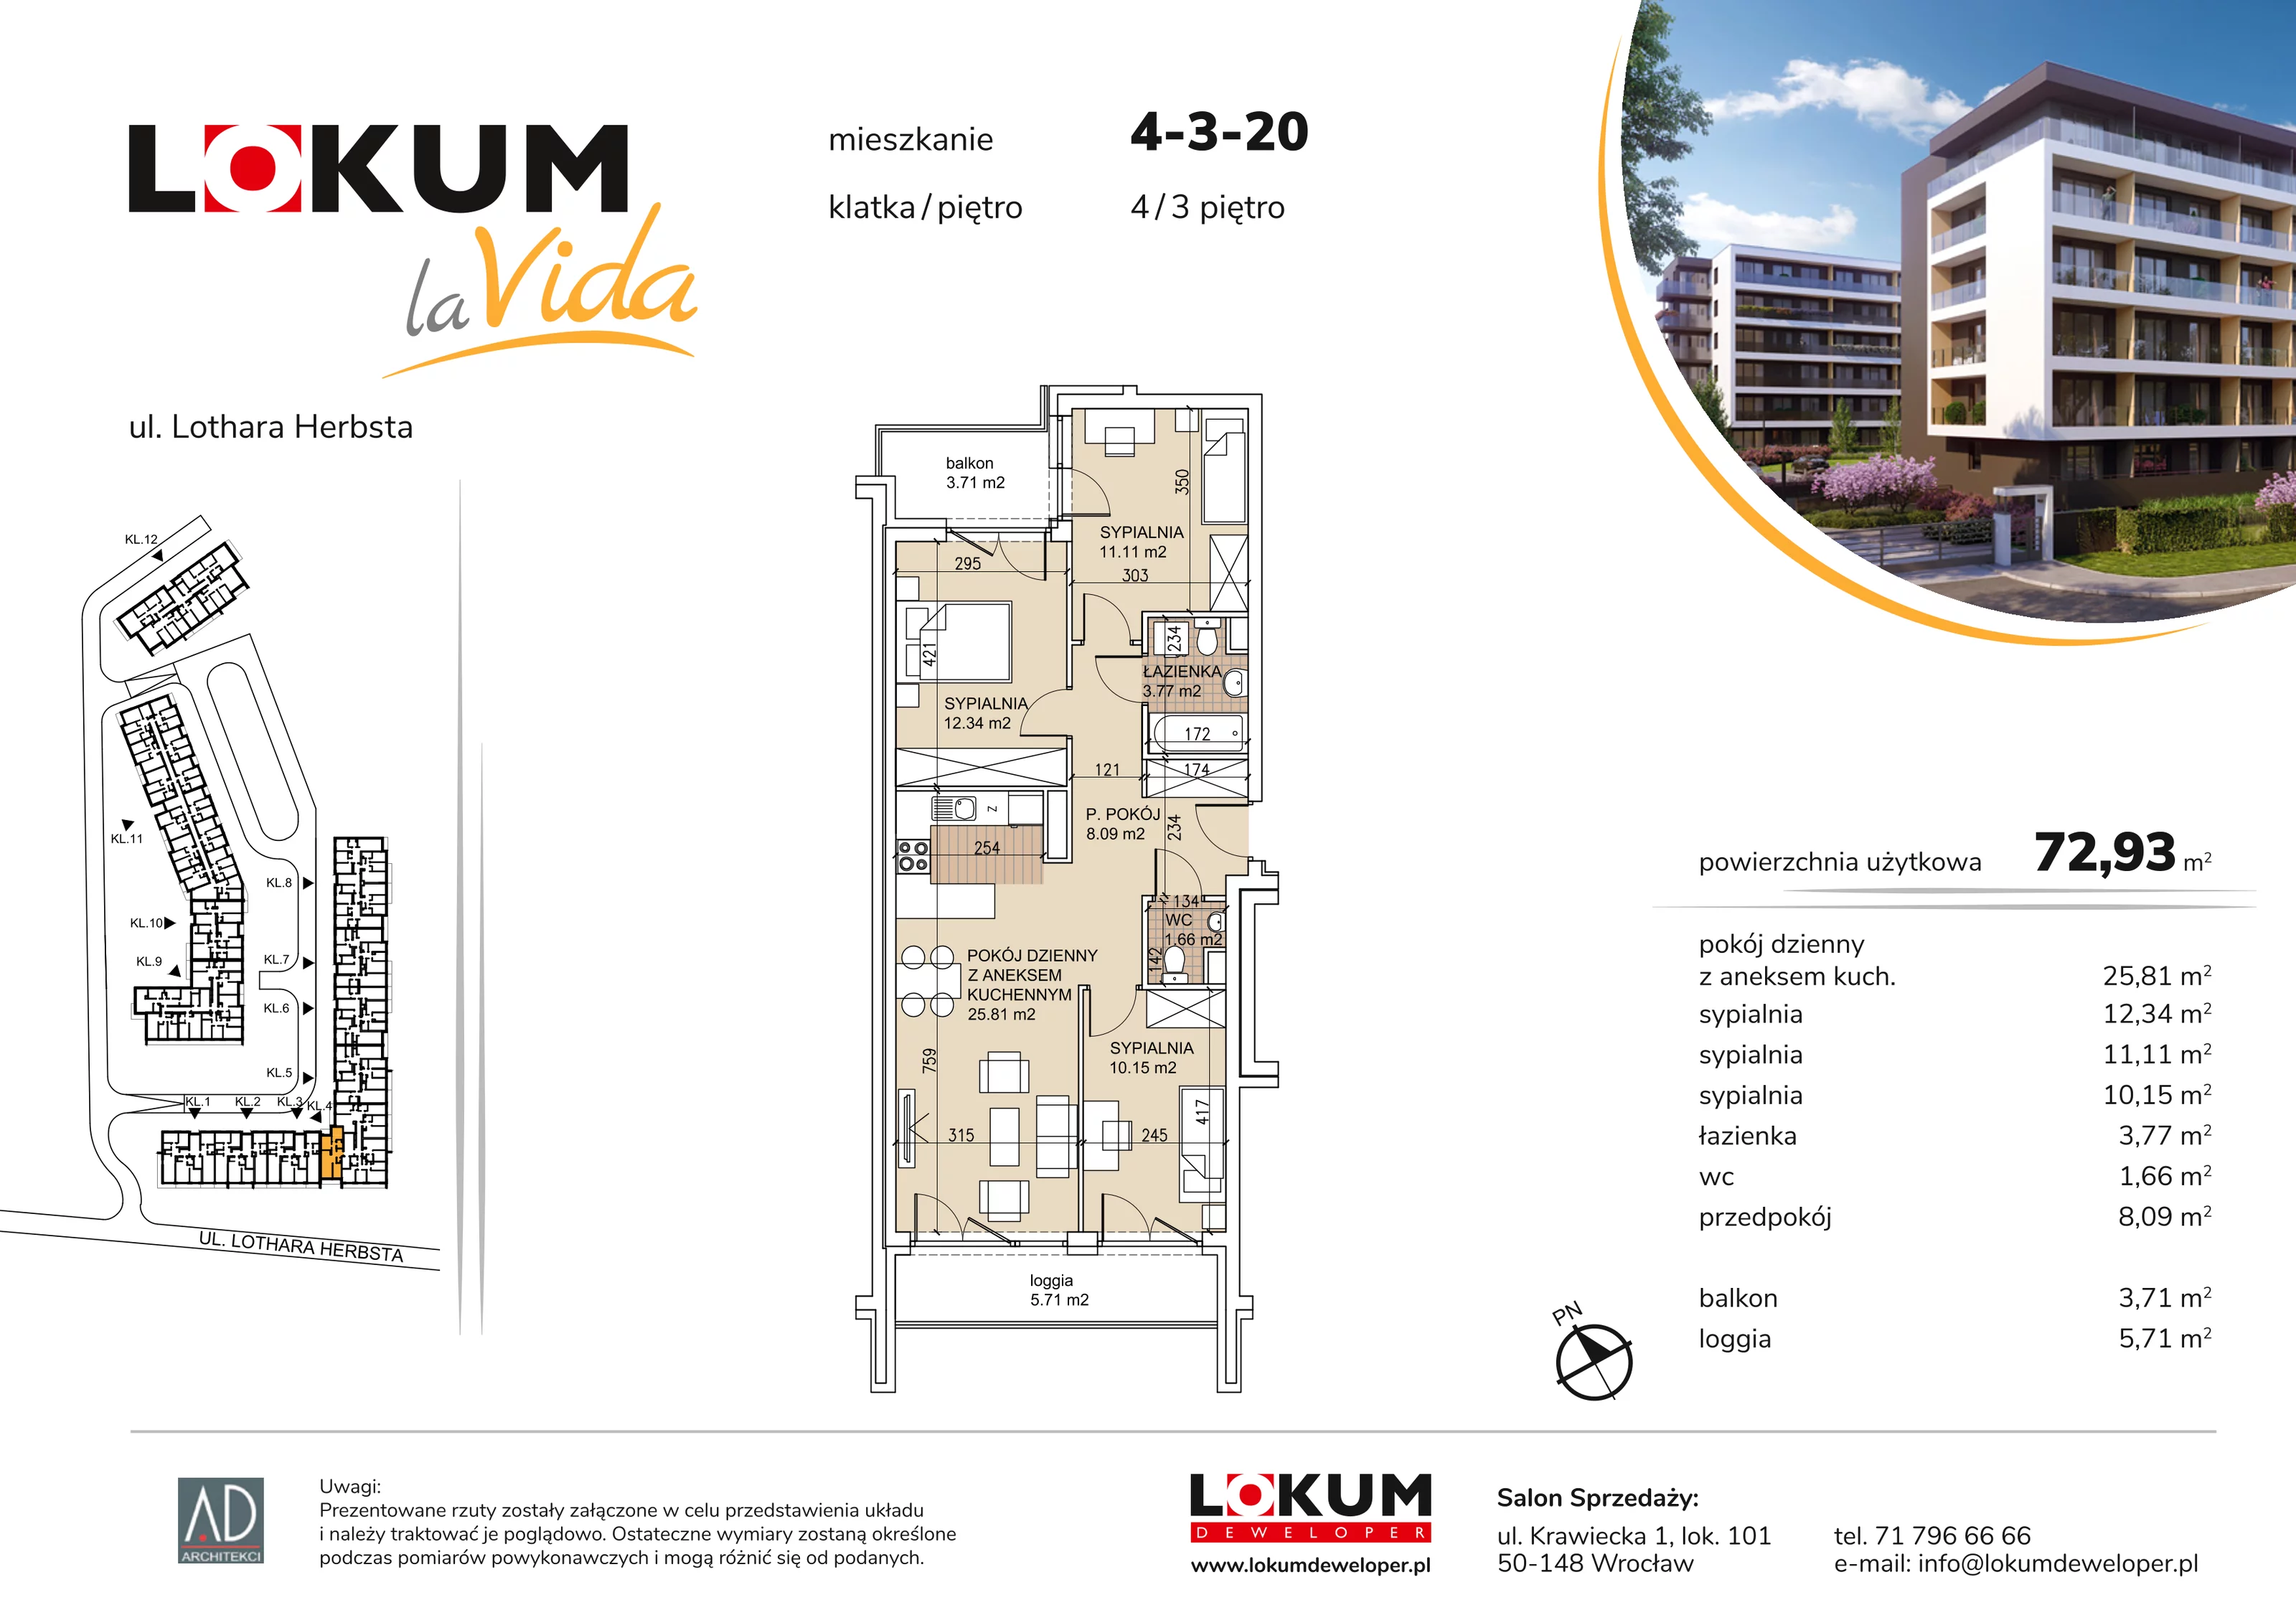 Mieszkanie 72,93 m², piętro 3, oferta nr 4-3-20, Lokum la Vida, Wrocław, Sołtysowice, ul. Lothara Herbsta